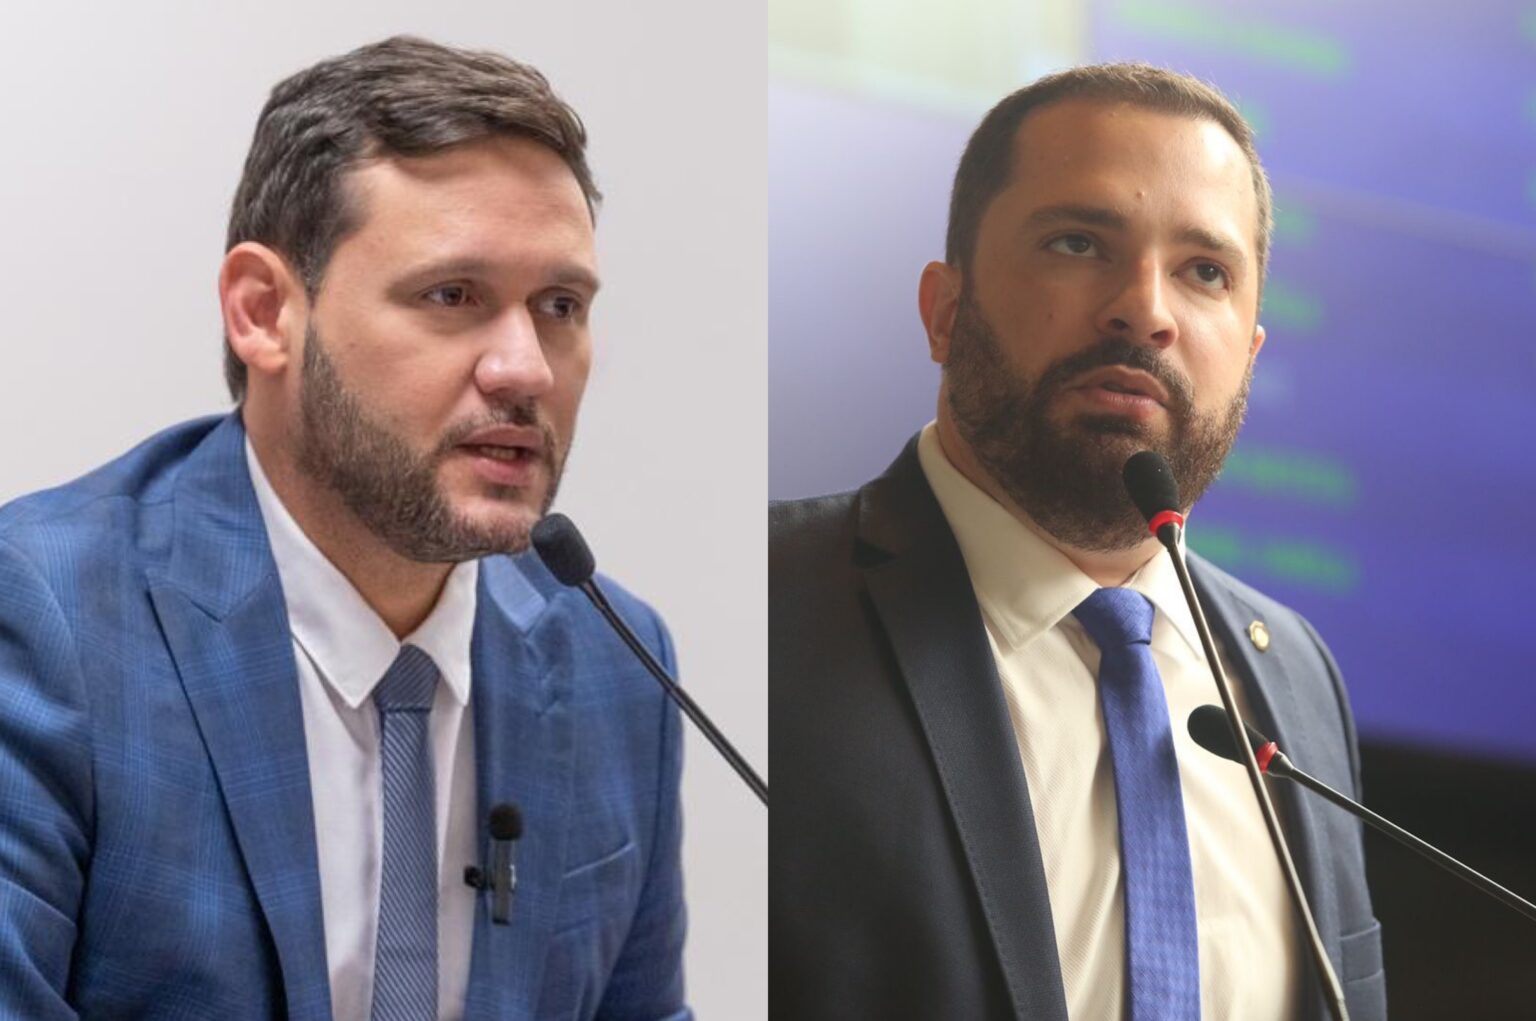  Presidente do PV em Pernambuco Almeja Vice de João Campos e Avalia Nomes Fortes para a Candidatura